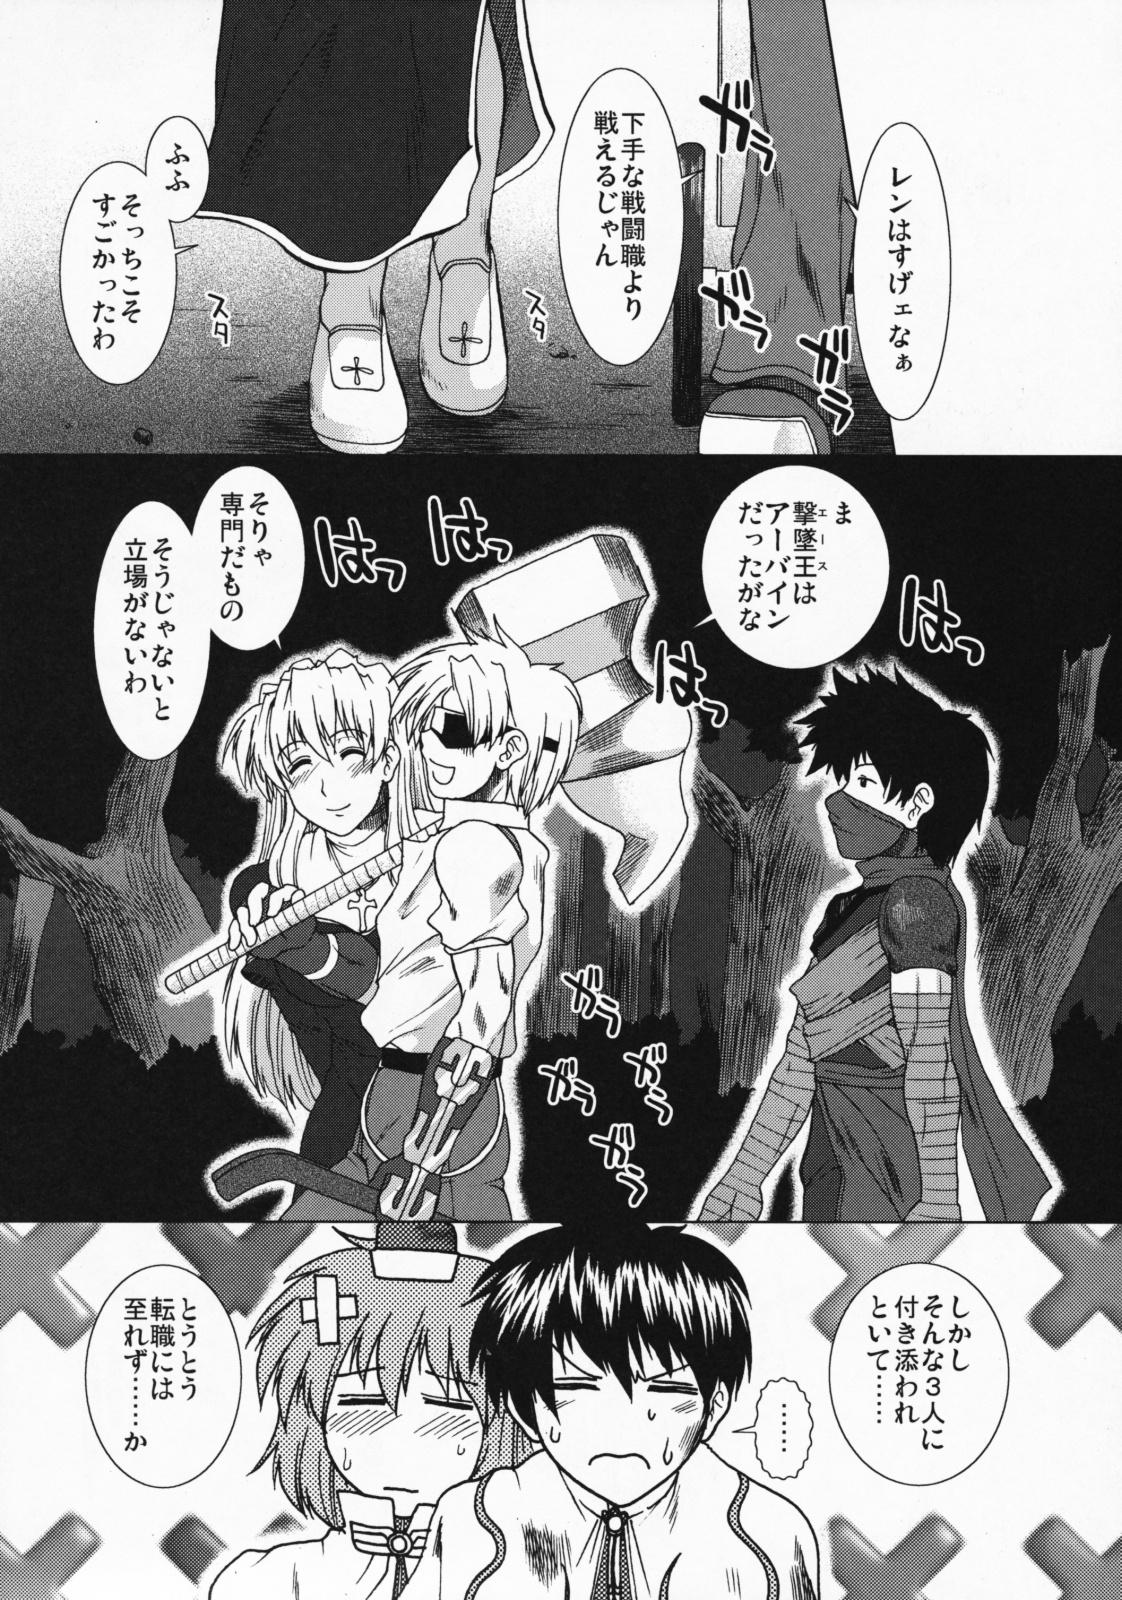 Comic Pruntera Extend Vol. 2 Taiyou wa Yuugure Toki ni Noboru 18